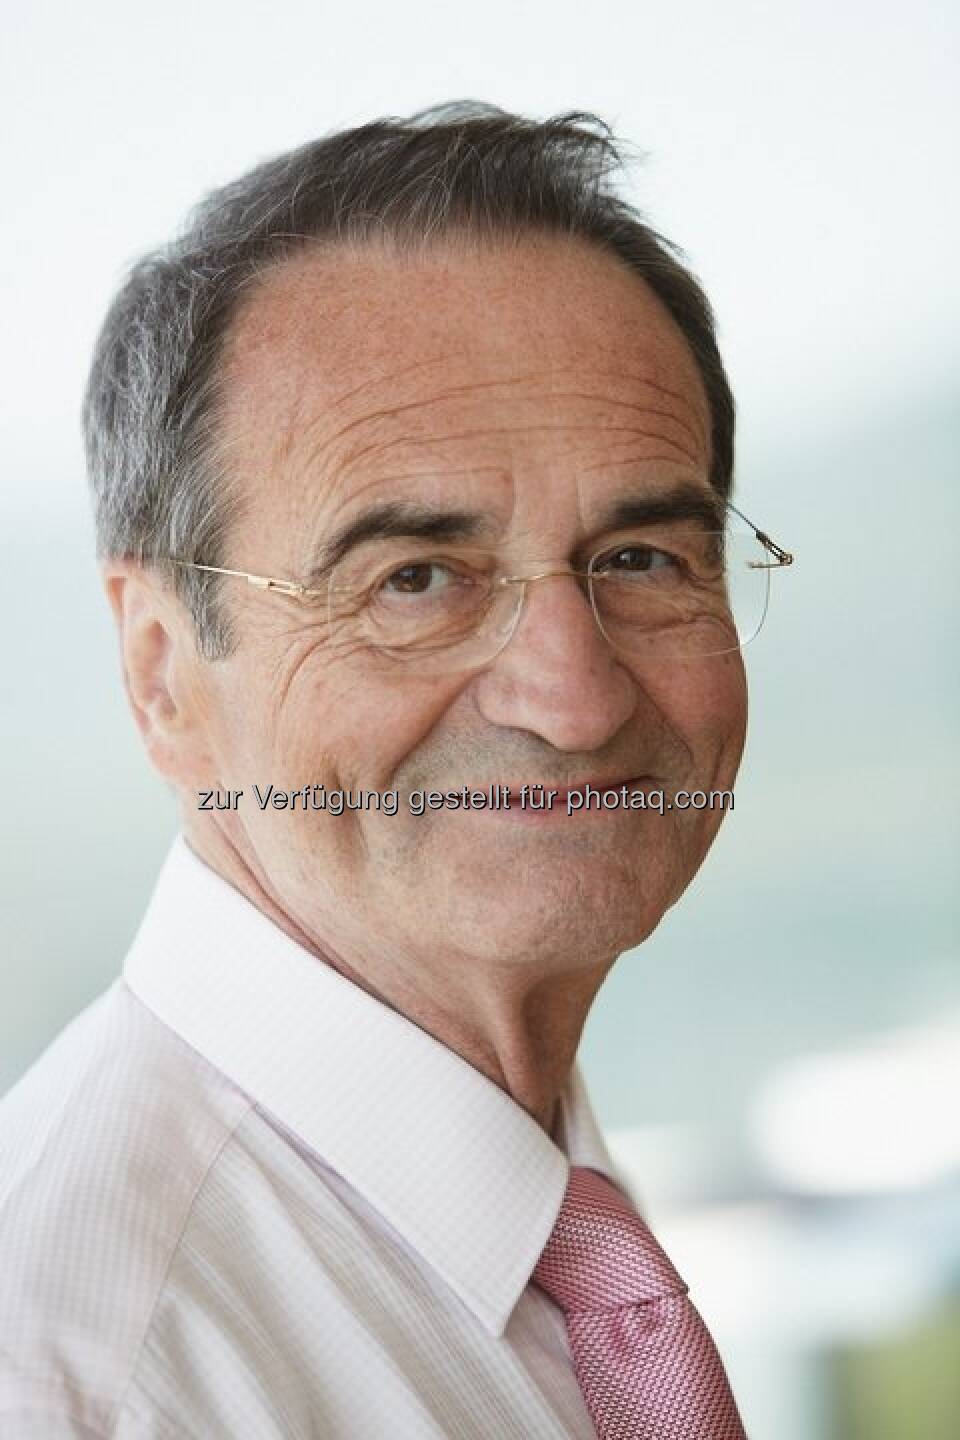 Walter Sonnleitner, Finanzjournalisten-Legende, feierte Anfang Jänner seinen 66er. finanzmarktfoto.at gratuliert herzlich! (Foto mit freundlicher Genehmigung des Geburtstagskinds)